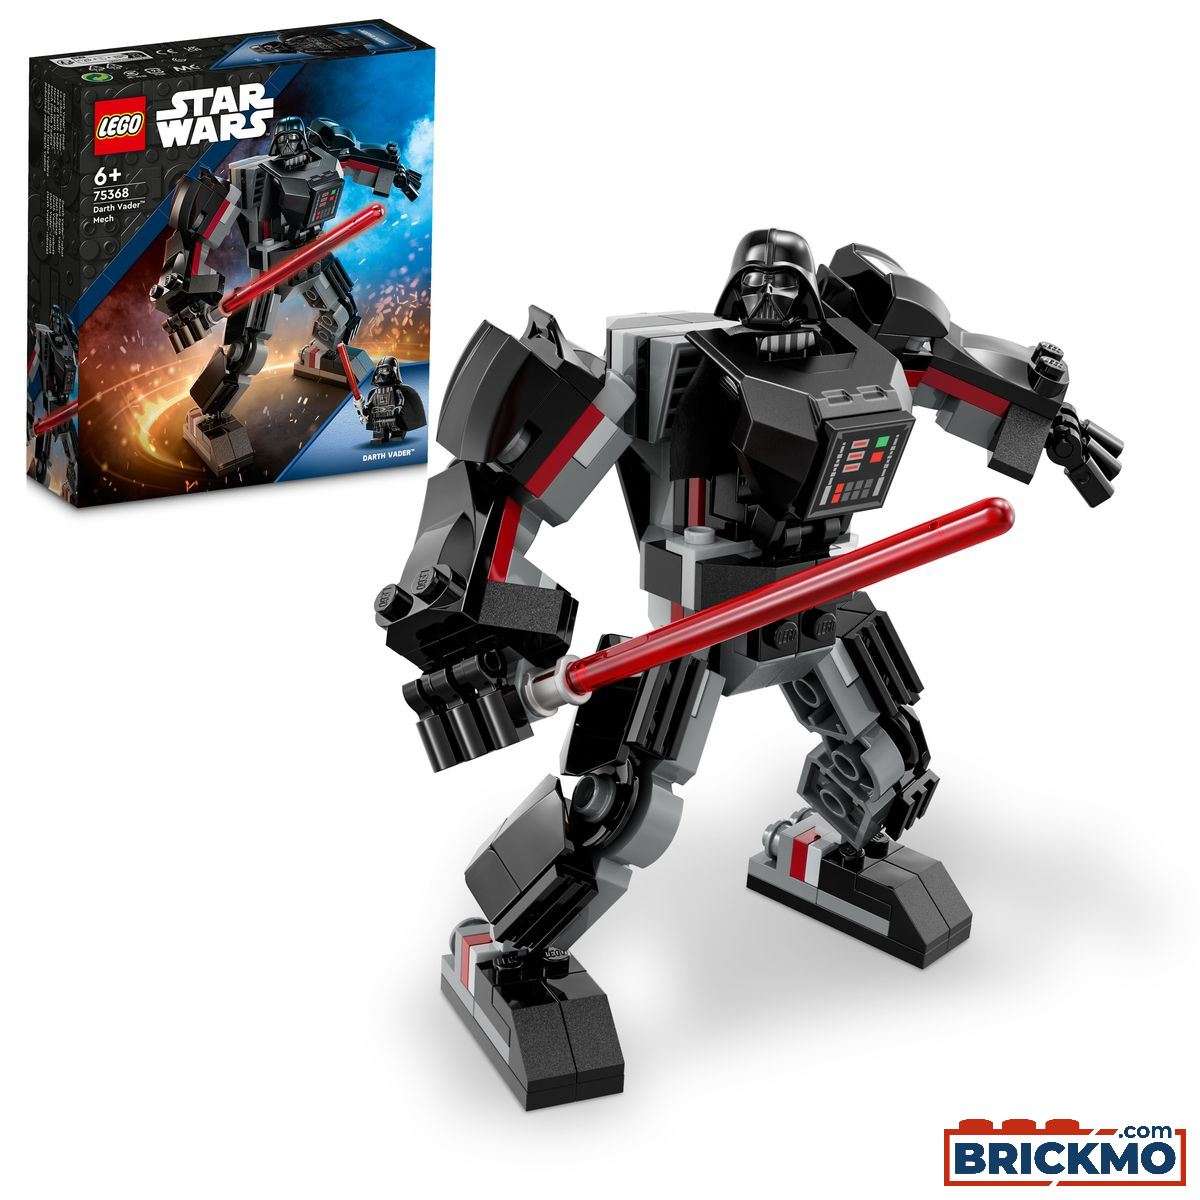 LEGO Star Wars 75368 Darth Vader-kamprobot 75368